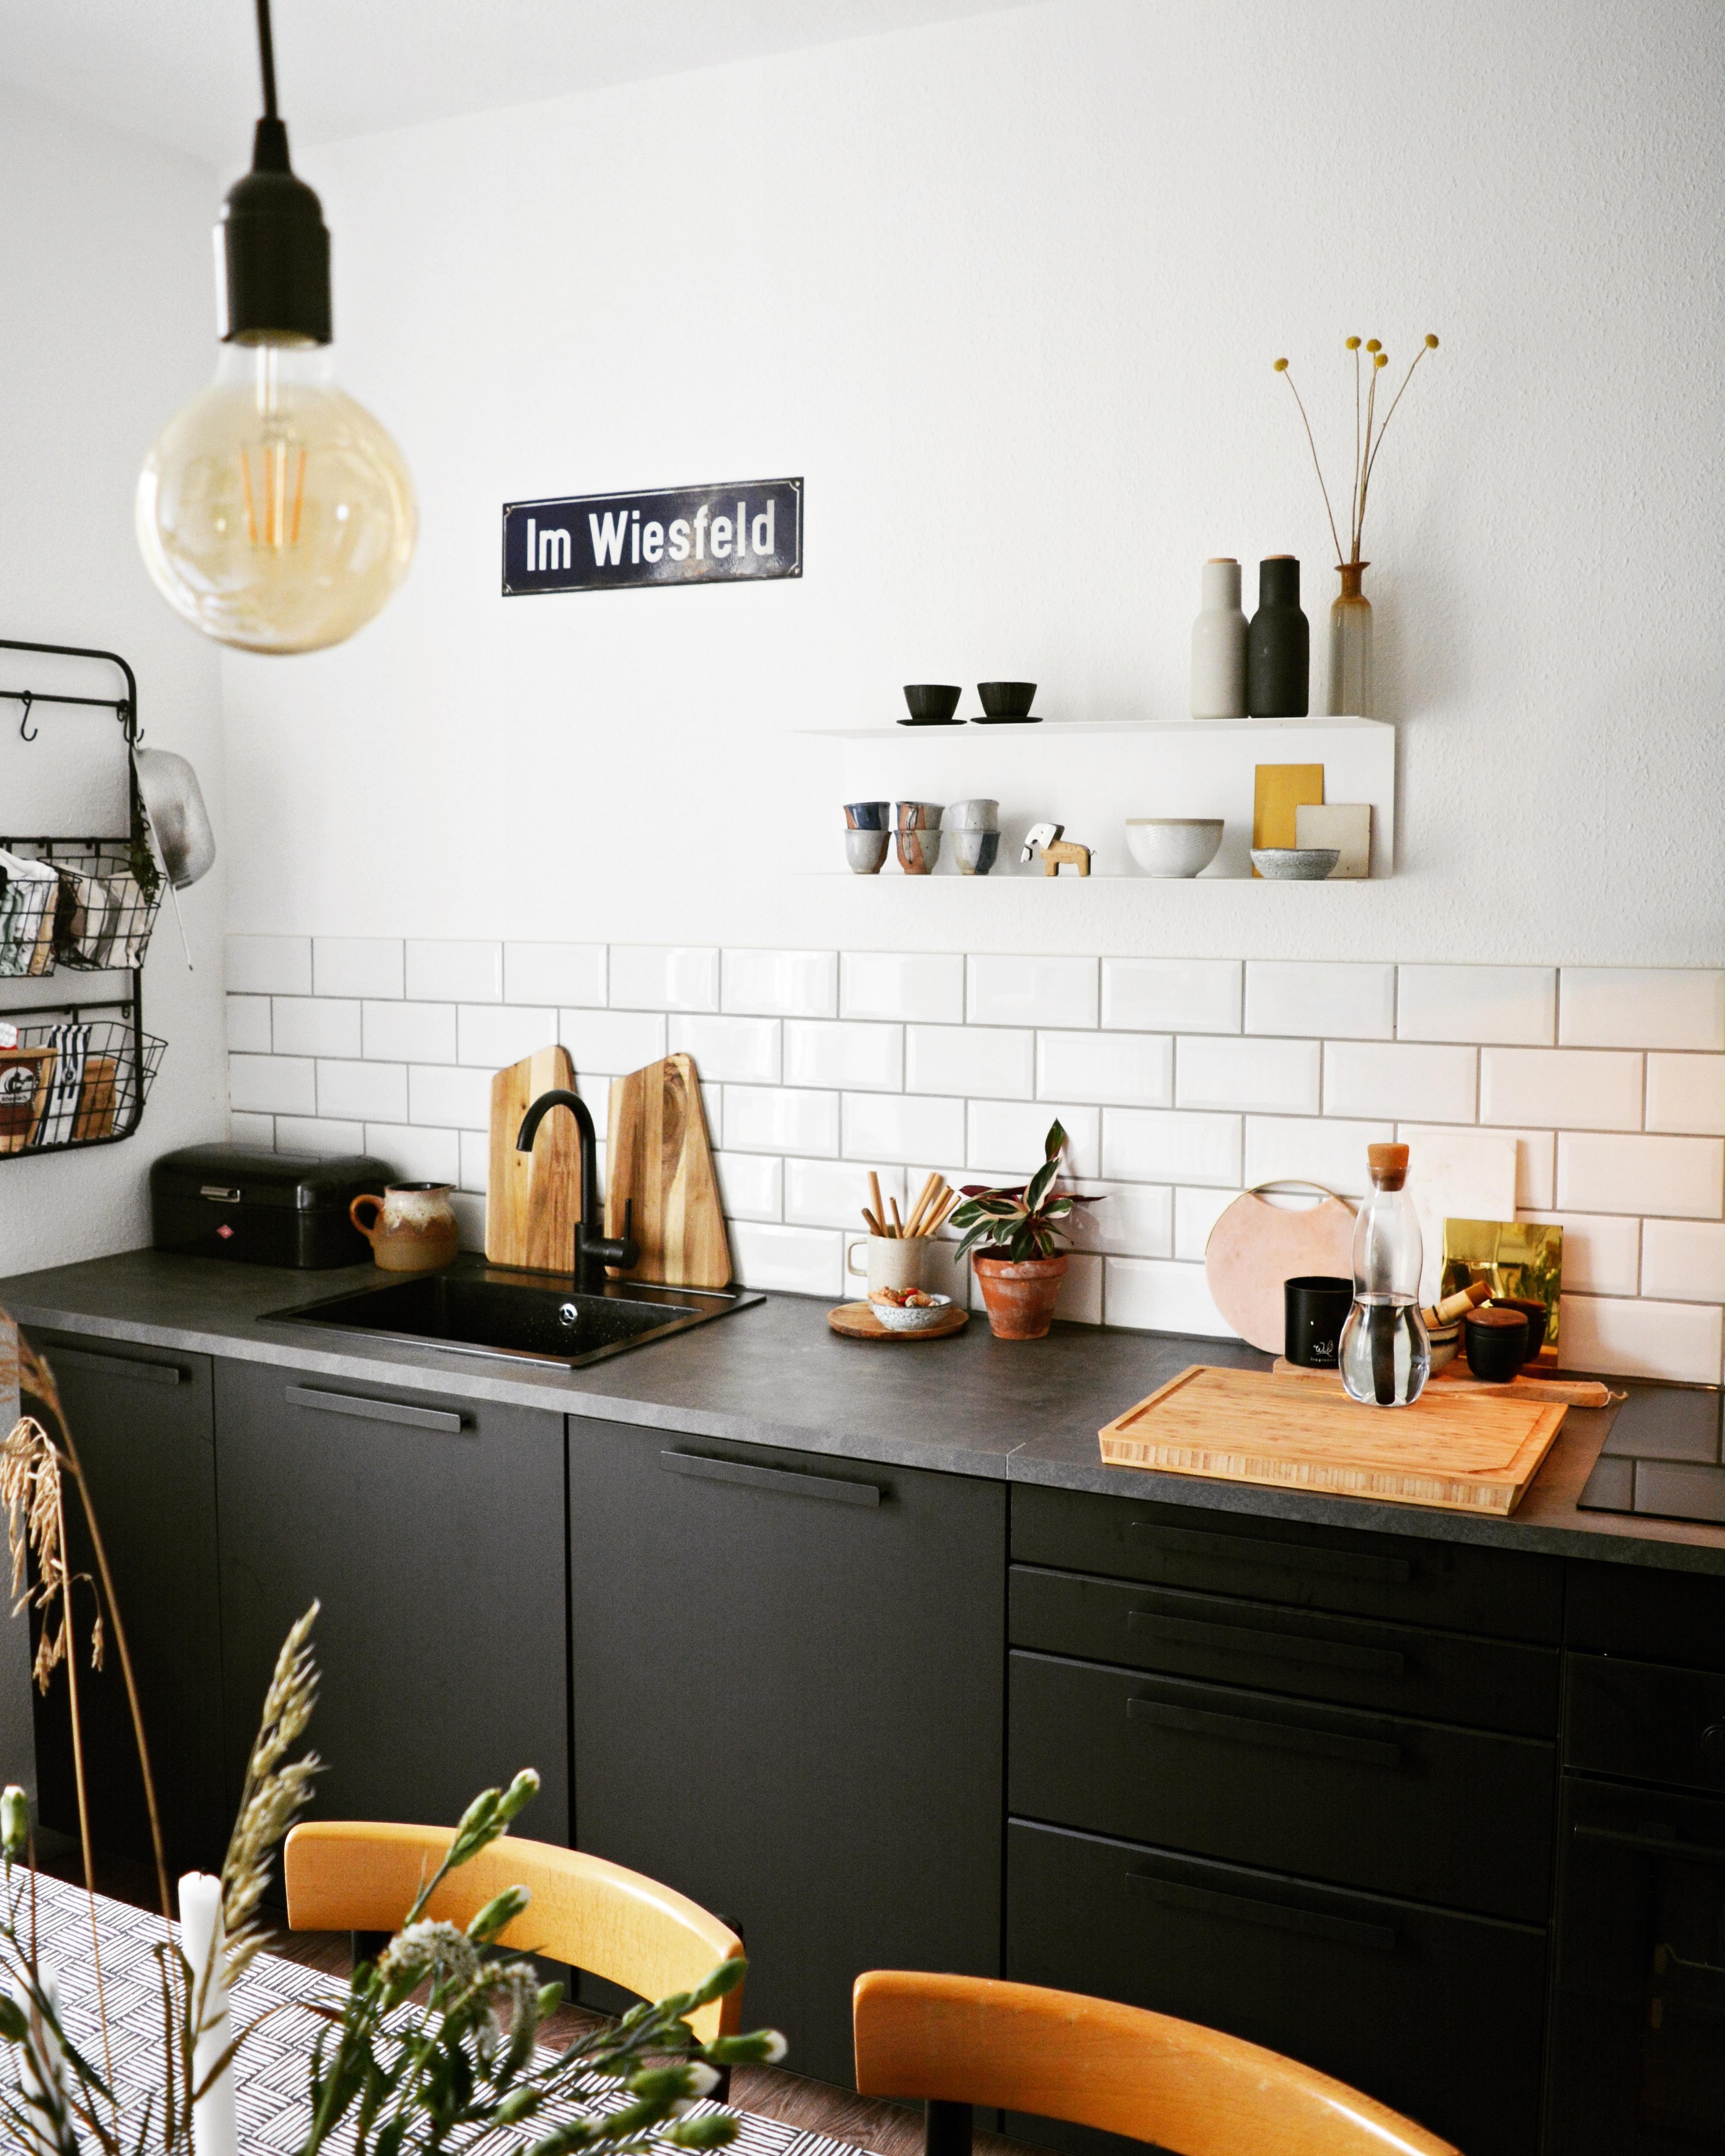 Team 'schwarz' 🖤🙌
#Küchendetails#Küche#schwarz#Metrofliesen#Licht#Kaffeehausstühle